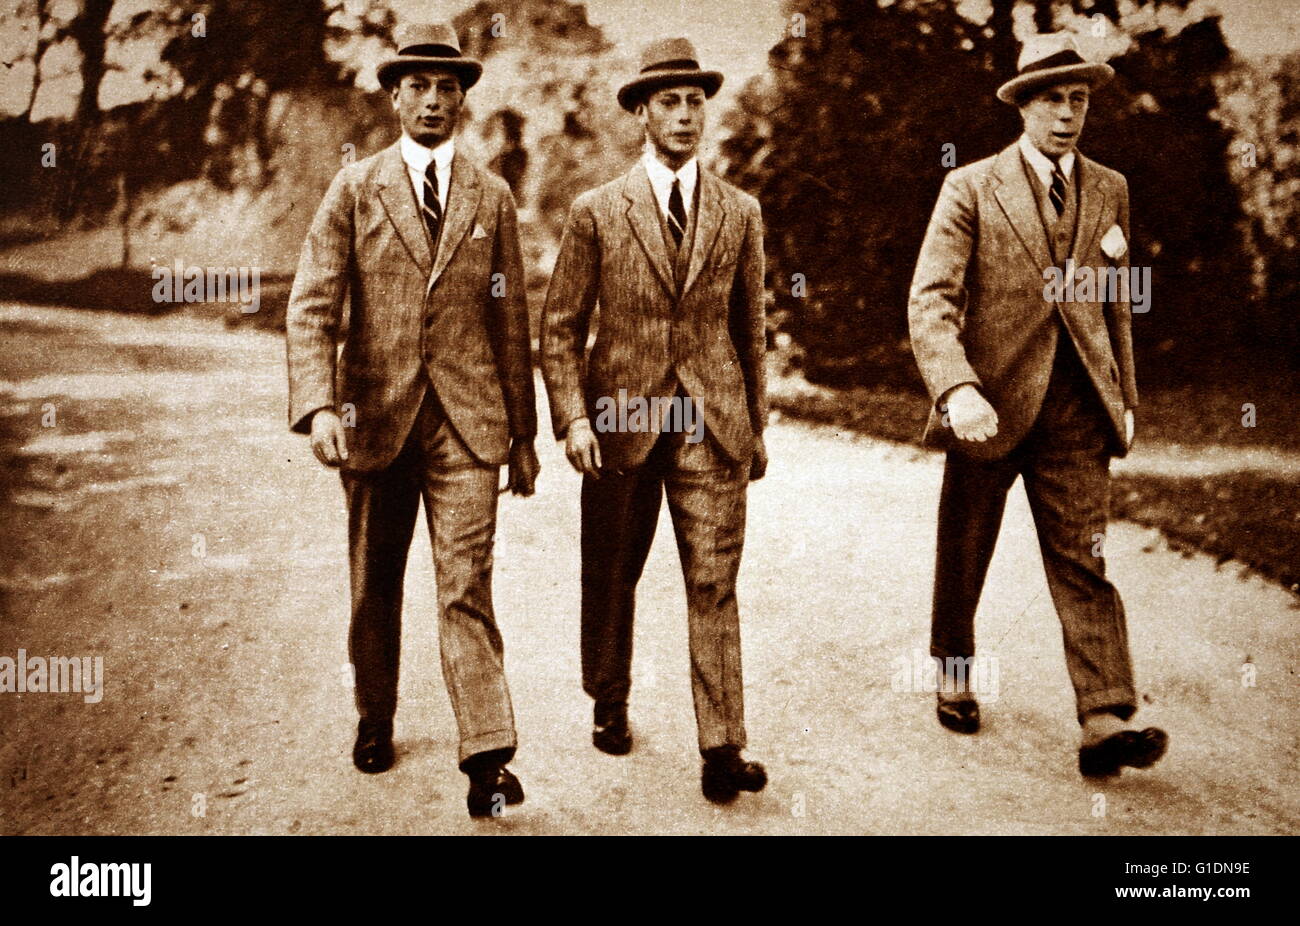 Fotografía de Prince Albert Frederick Arthur George (1895-1952), el Príncipe Henry, Duque de Gloucester (1900-1974) y Comandante Luis Greig (1880-1953) caminando juntos en Cambridge. Fecha Siglo XX Foto de stock